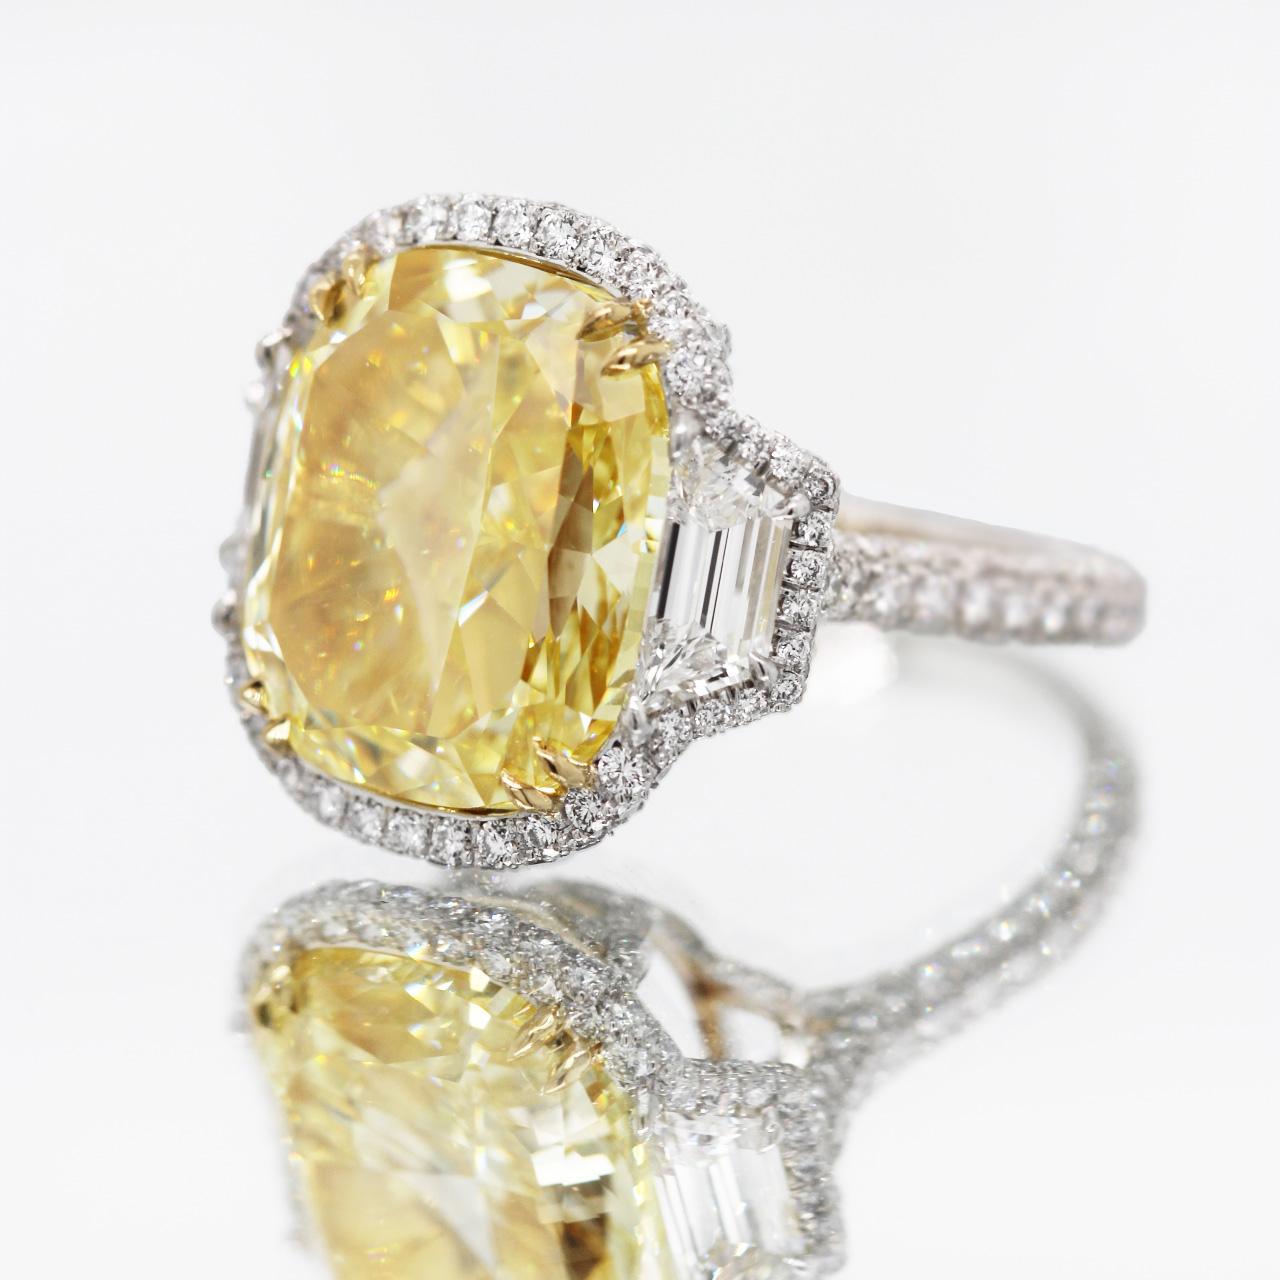 GIA-zertifizierter 15+ Karat Fancy Intense Yellow Diamant-Verlobungsring im Kissenschliff mit drei Steinen. Trilogie-Ring mit 15,15 Karat natürlichem Fancy Intense Yellow Stein im Kissenschliff, gefasst in 18er Gelbgold und Platin. 

Ein Halo aus